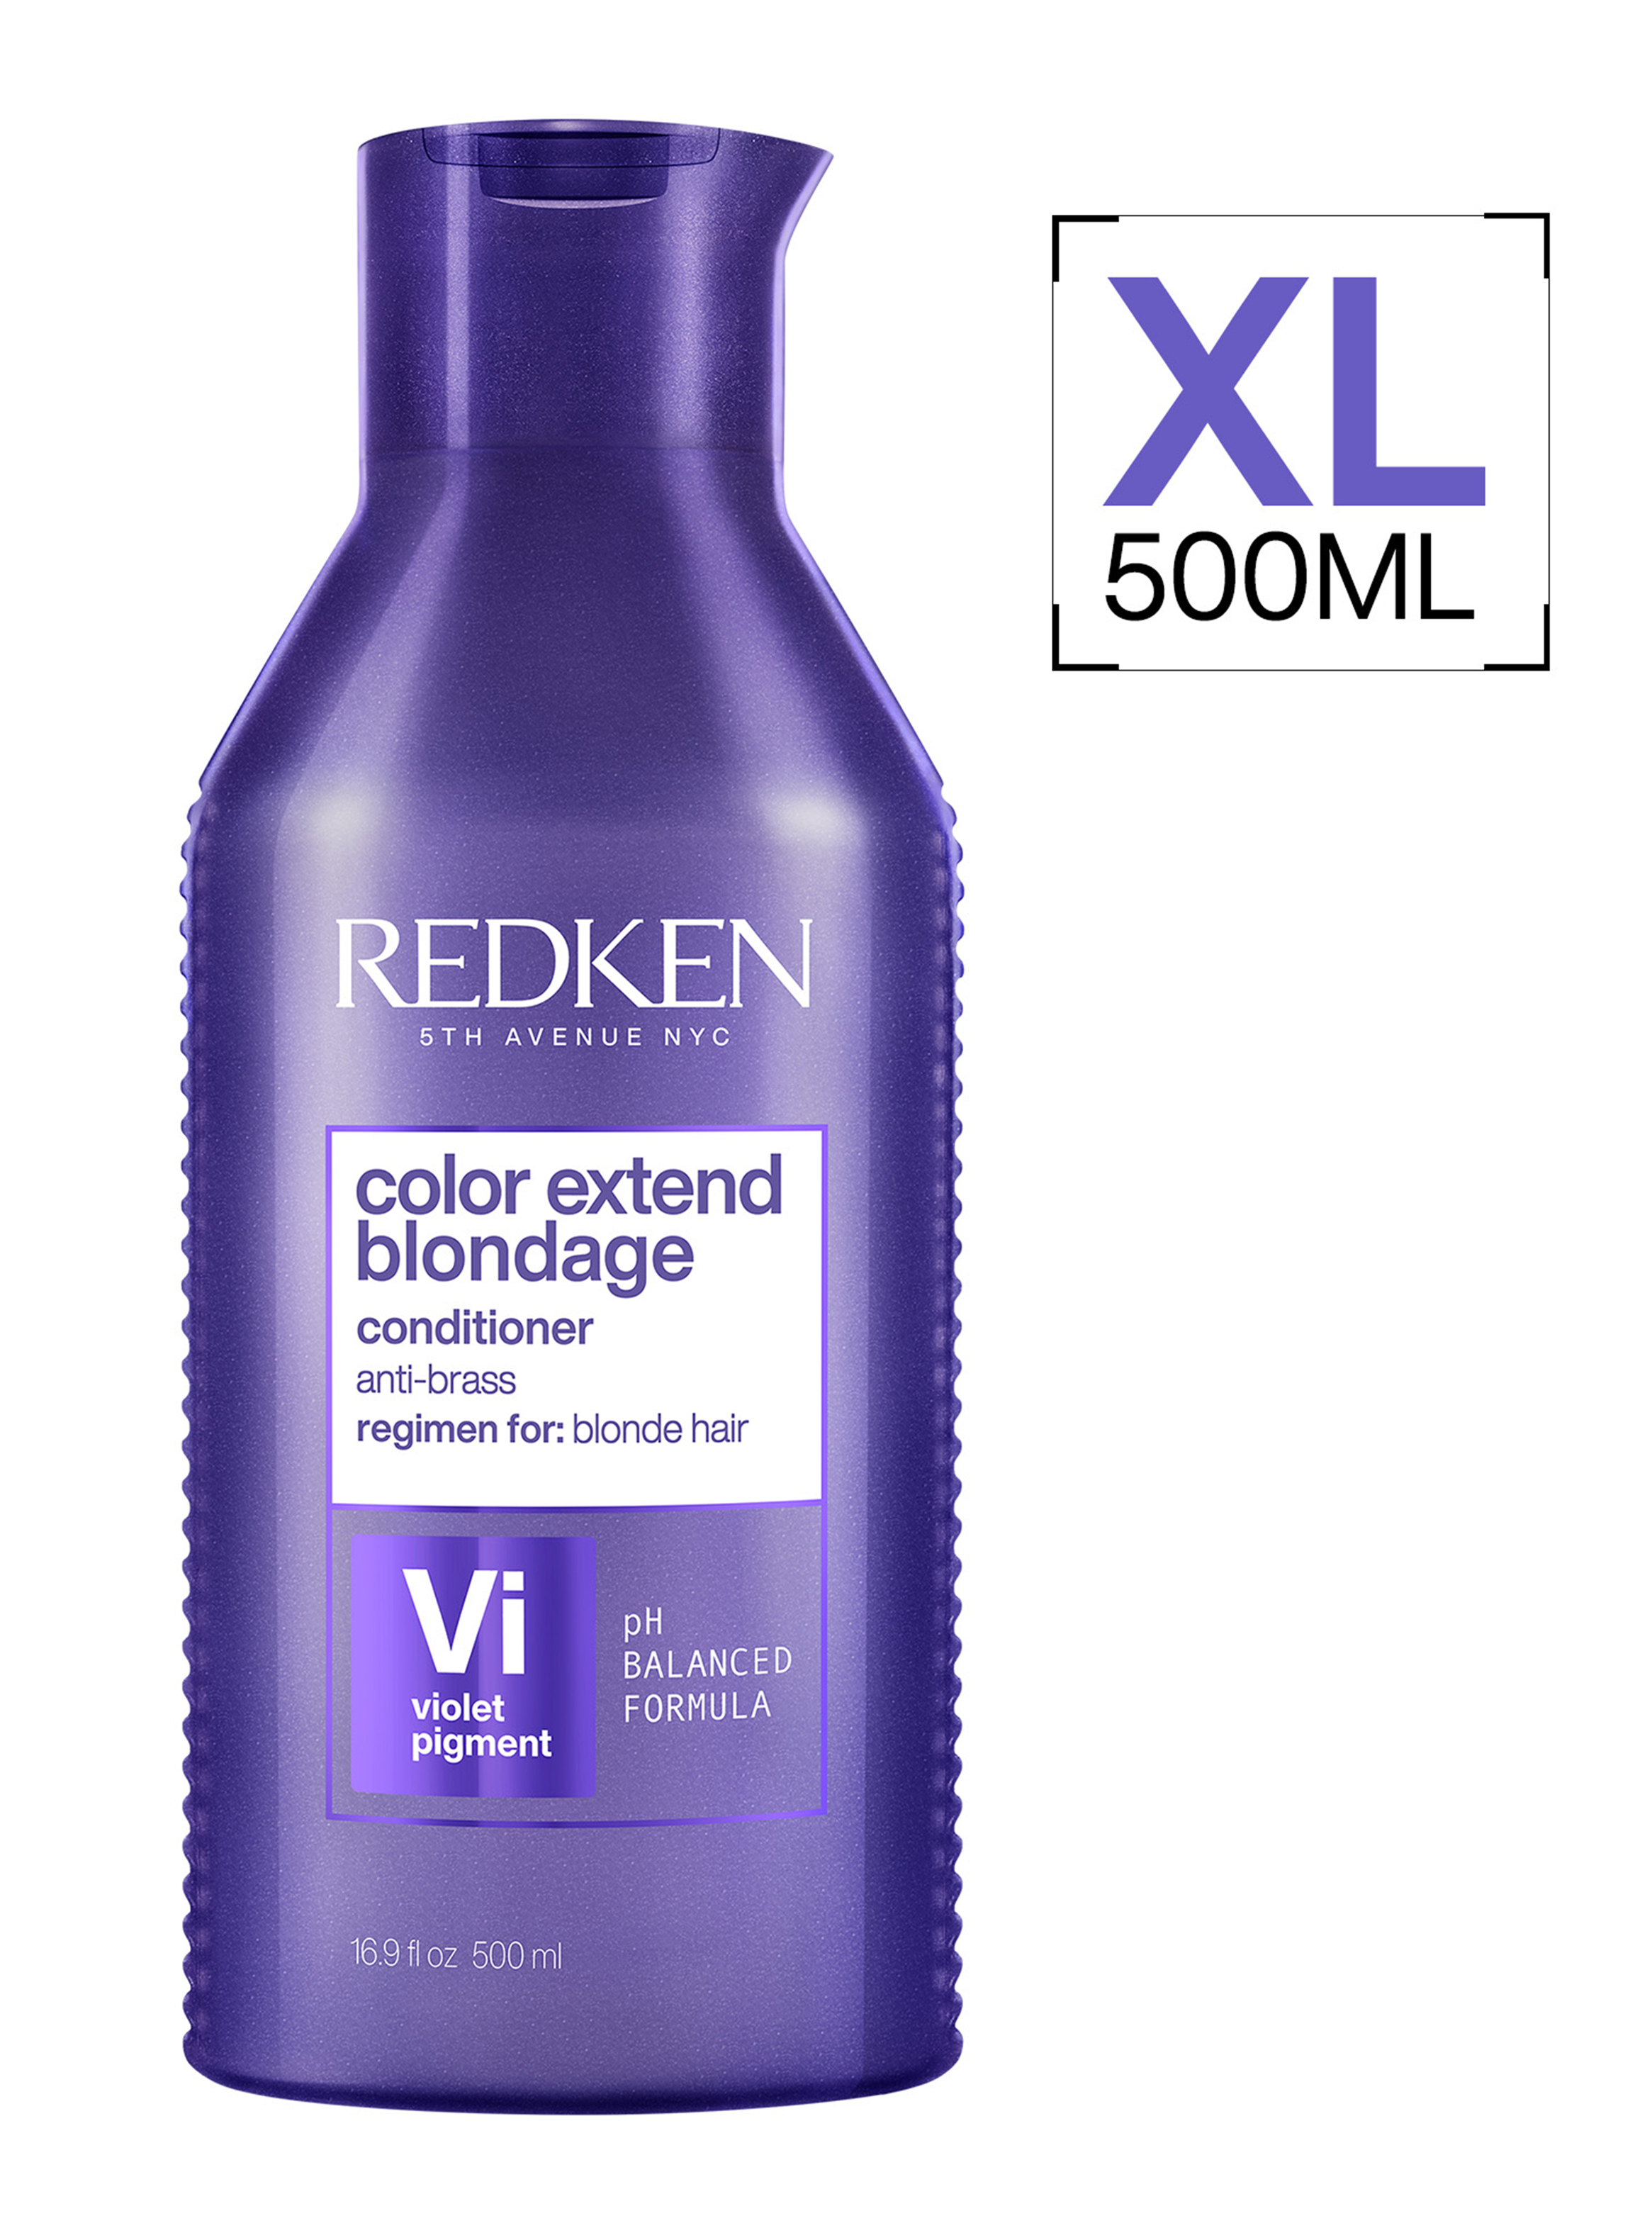 Acondicionador XL Matizador Cabello Rubio Color Extend Blondage 500ml